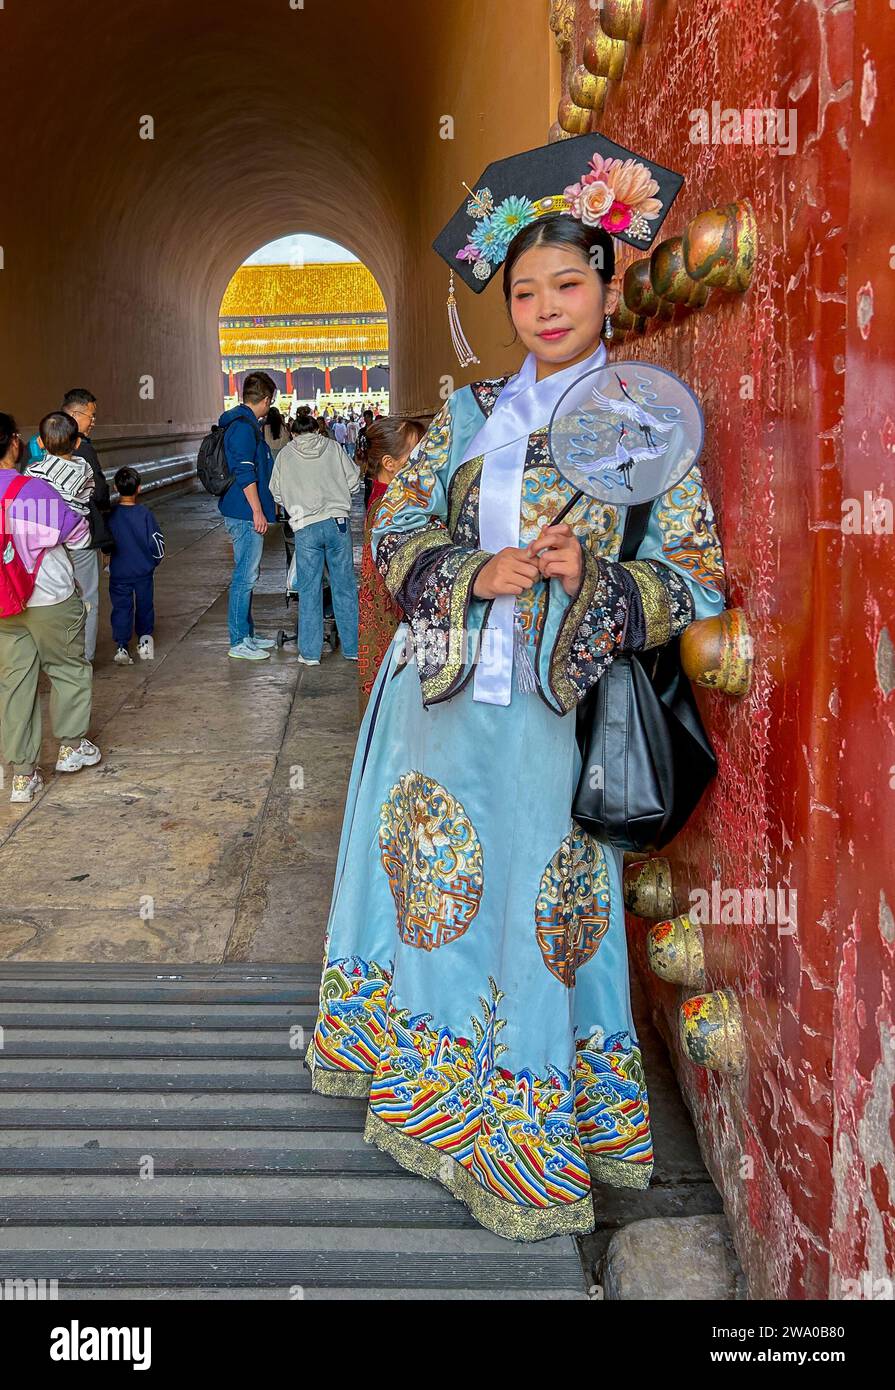 Pechino, Cina, Ritratto di donna cinese in posa, costume tradizionale, turisti, visita nella città Proibita, 'sala della Suprema armonia', Palazzo Imperiale Foto Stock